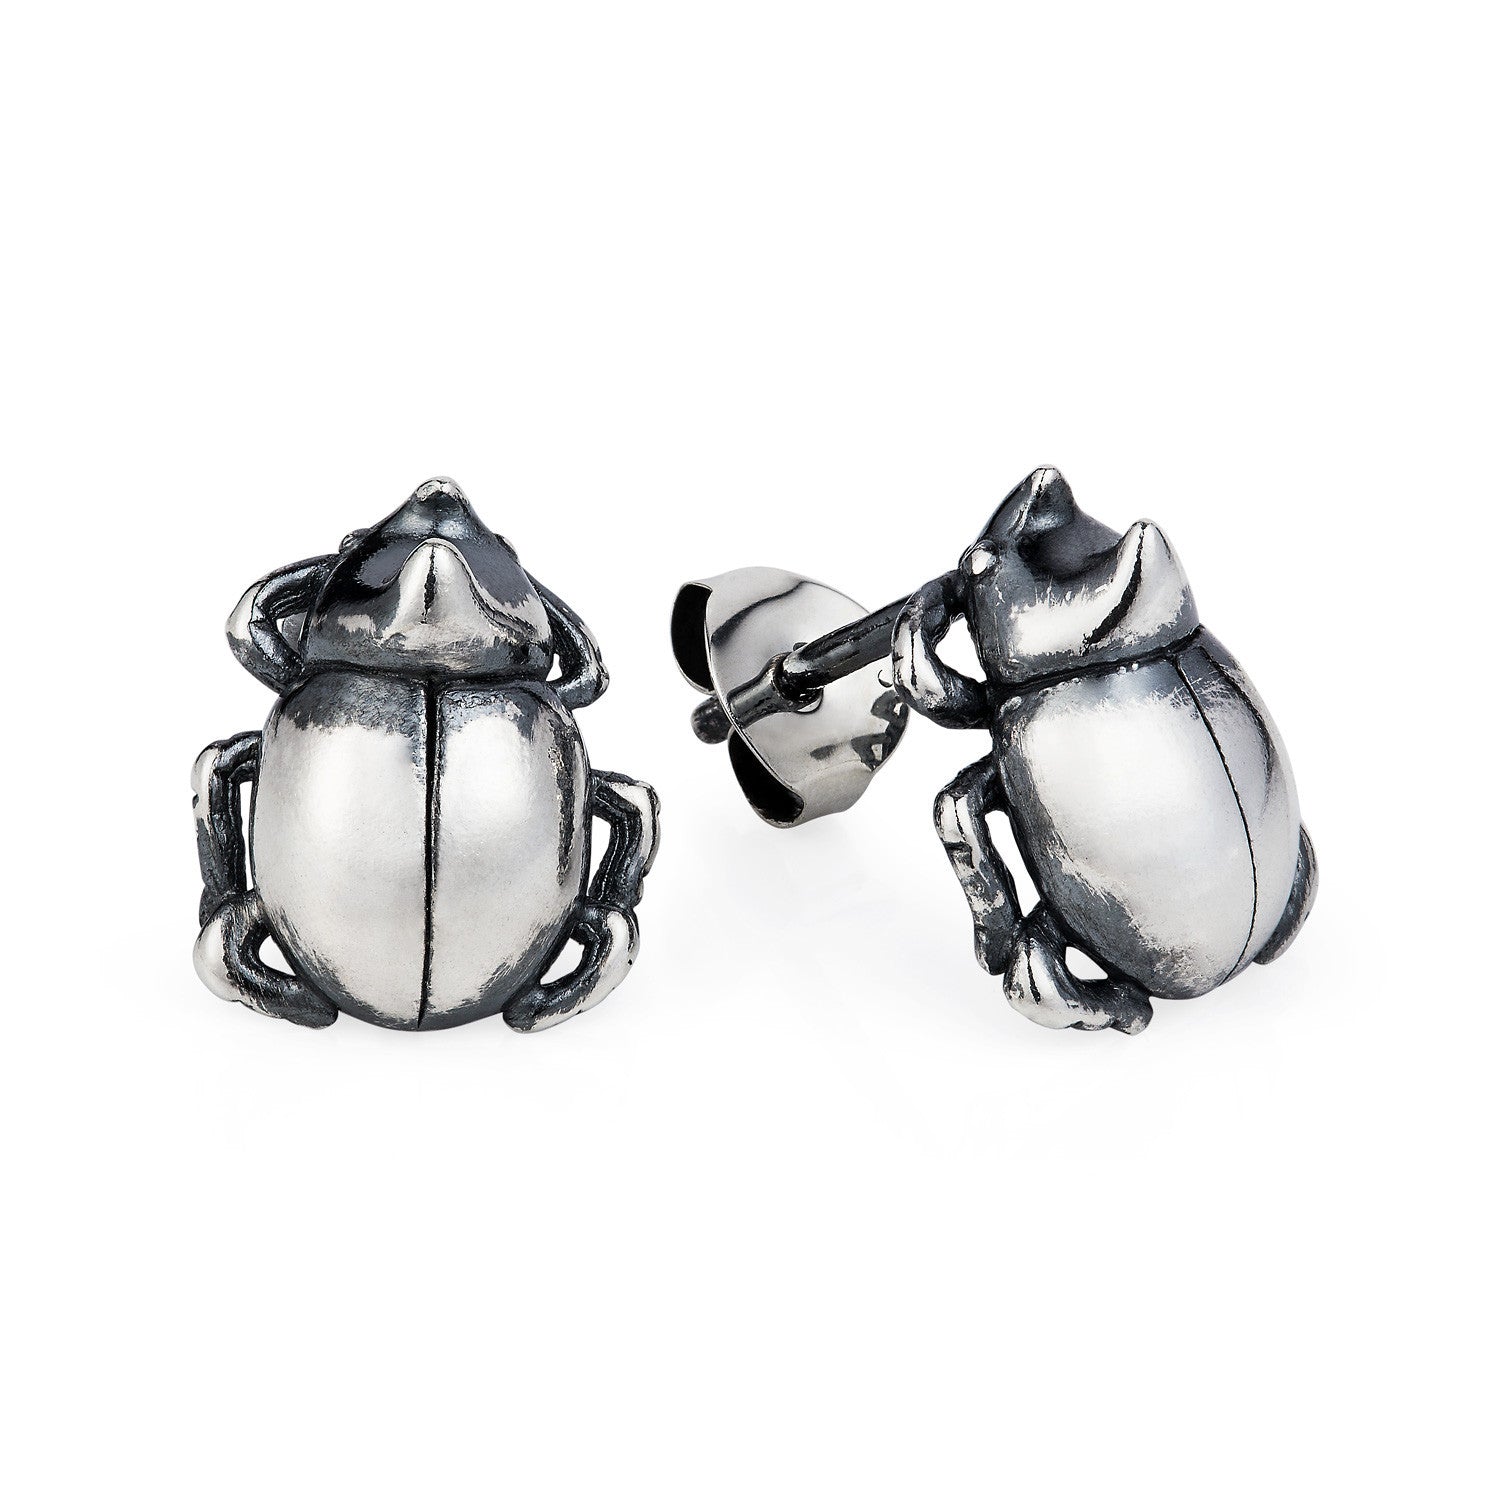 Little Rhino Beetle Stud Earrings by Yasmin Everley